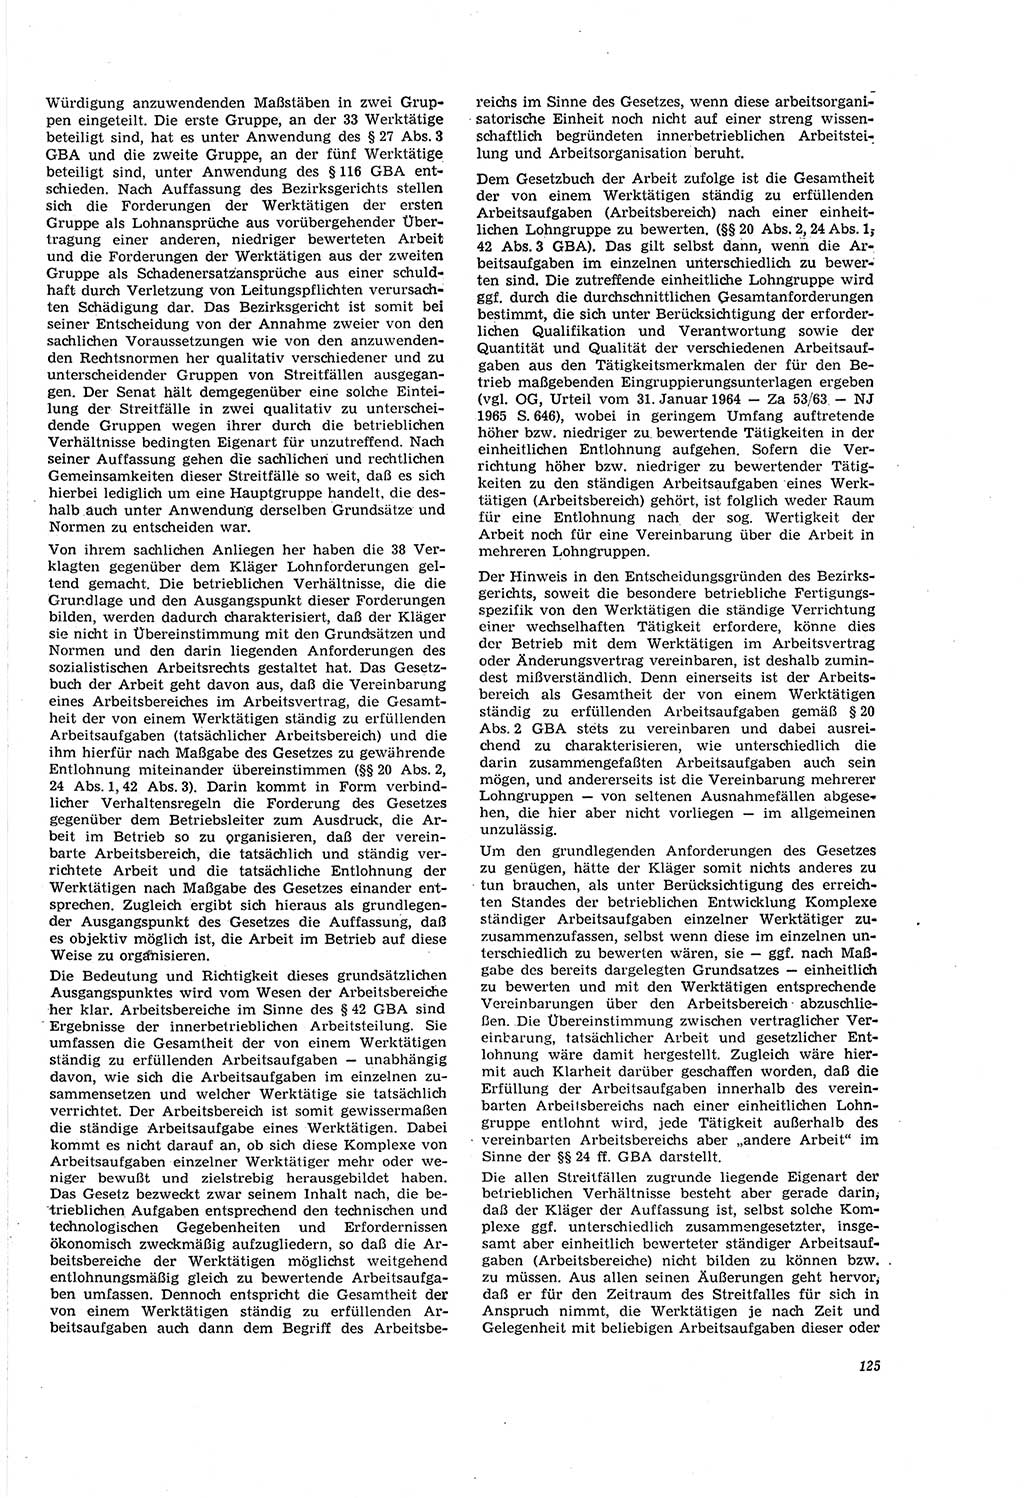 Neue Justiz (NJ), Zeitschrift für Recht und Rechtswissenschaft [Deutsche Demokratische Republik (DDR)], 20. Jahrgang 1966, Seite 125 (NJ DDR 1966, S. 125)